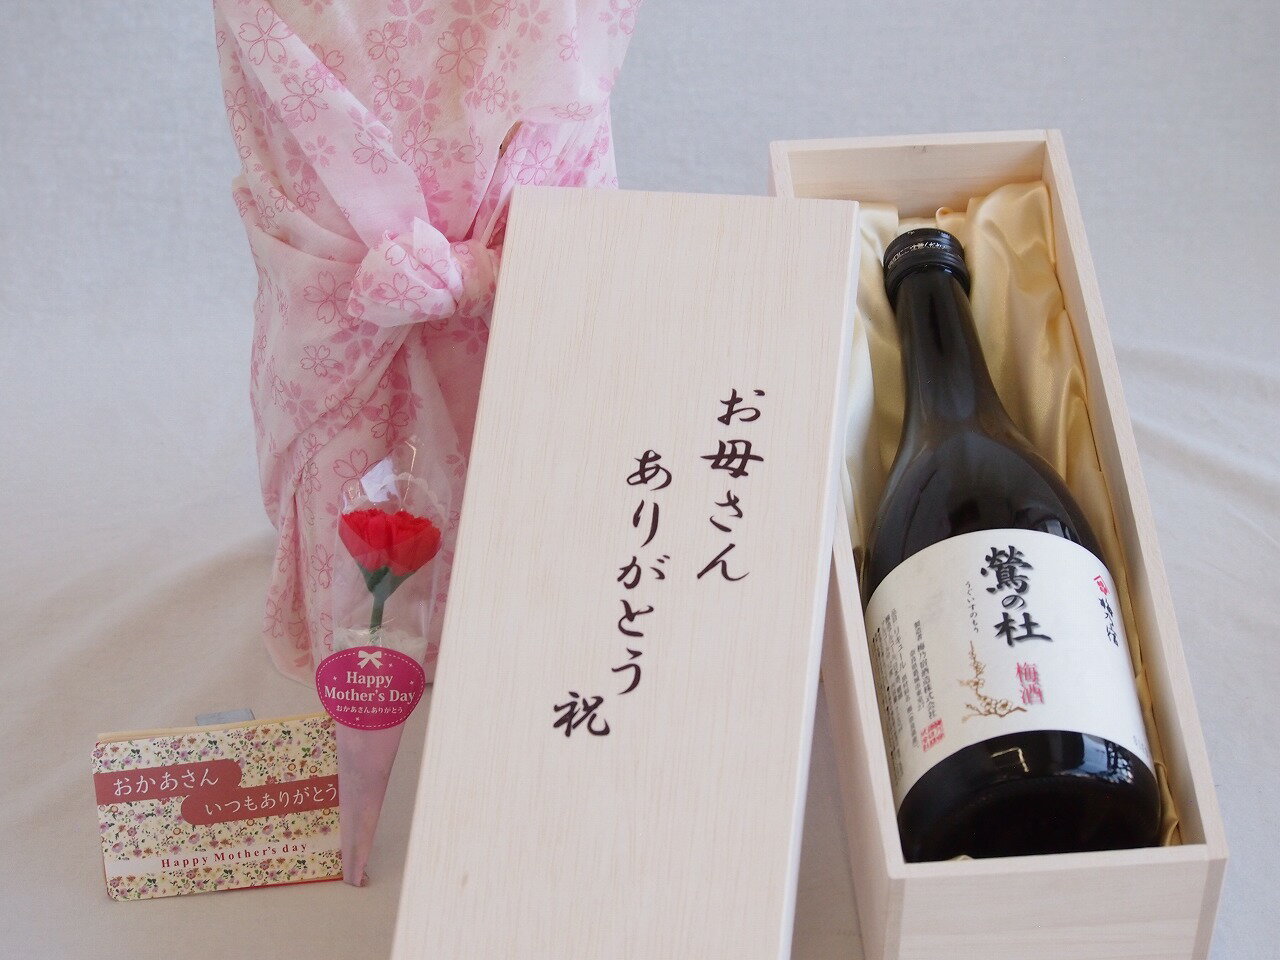 母の日 お母さんありがとう木箱セット 梅乃宿酒造 鶯の杜 奈良県 720ml 母の日カードとカーネイション付